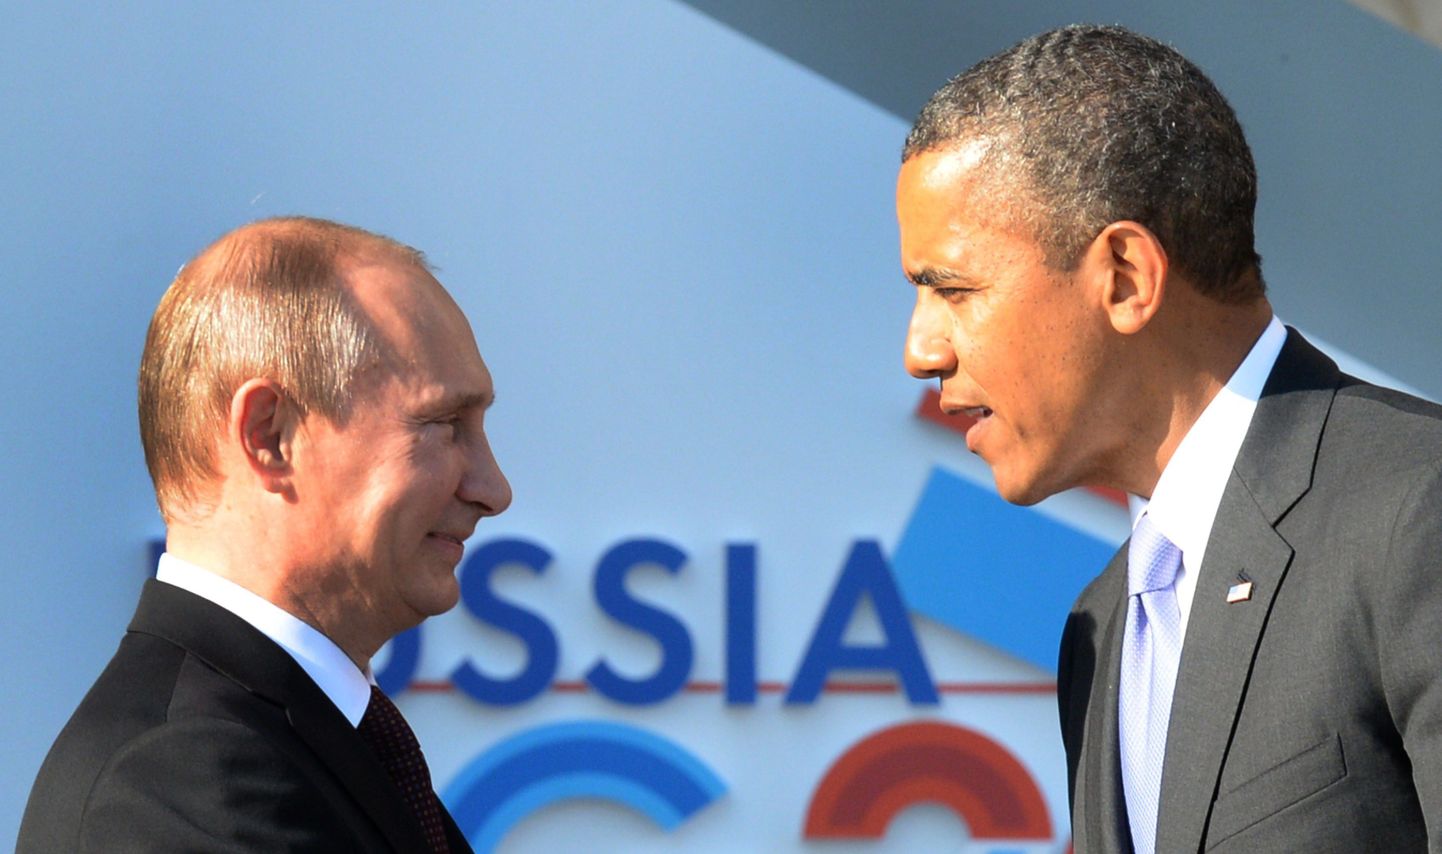 Vene president Vladimir Putin ja USA riigipea Barack Obama. Foto on tehtud 2013. aasta septembris.